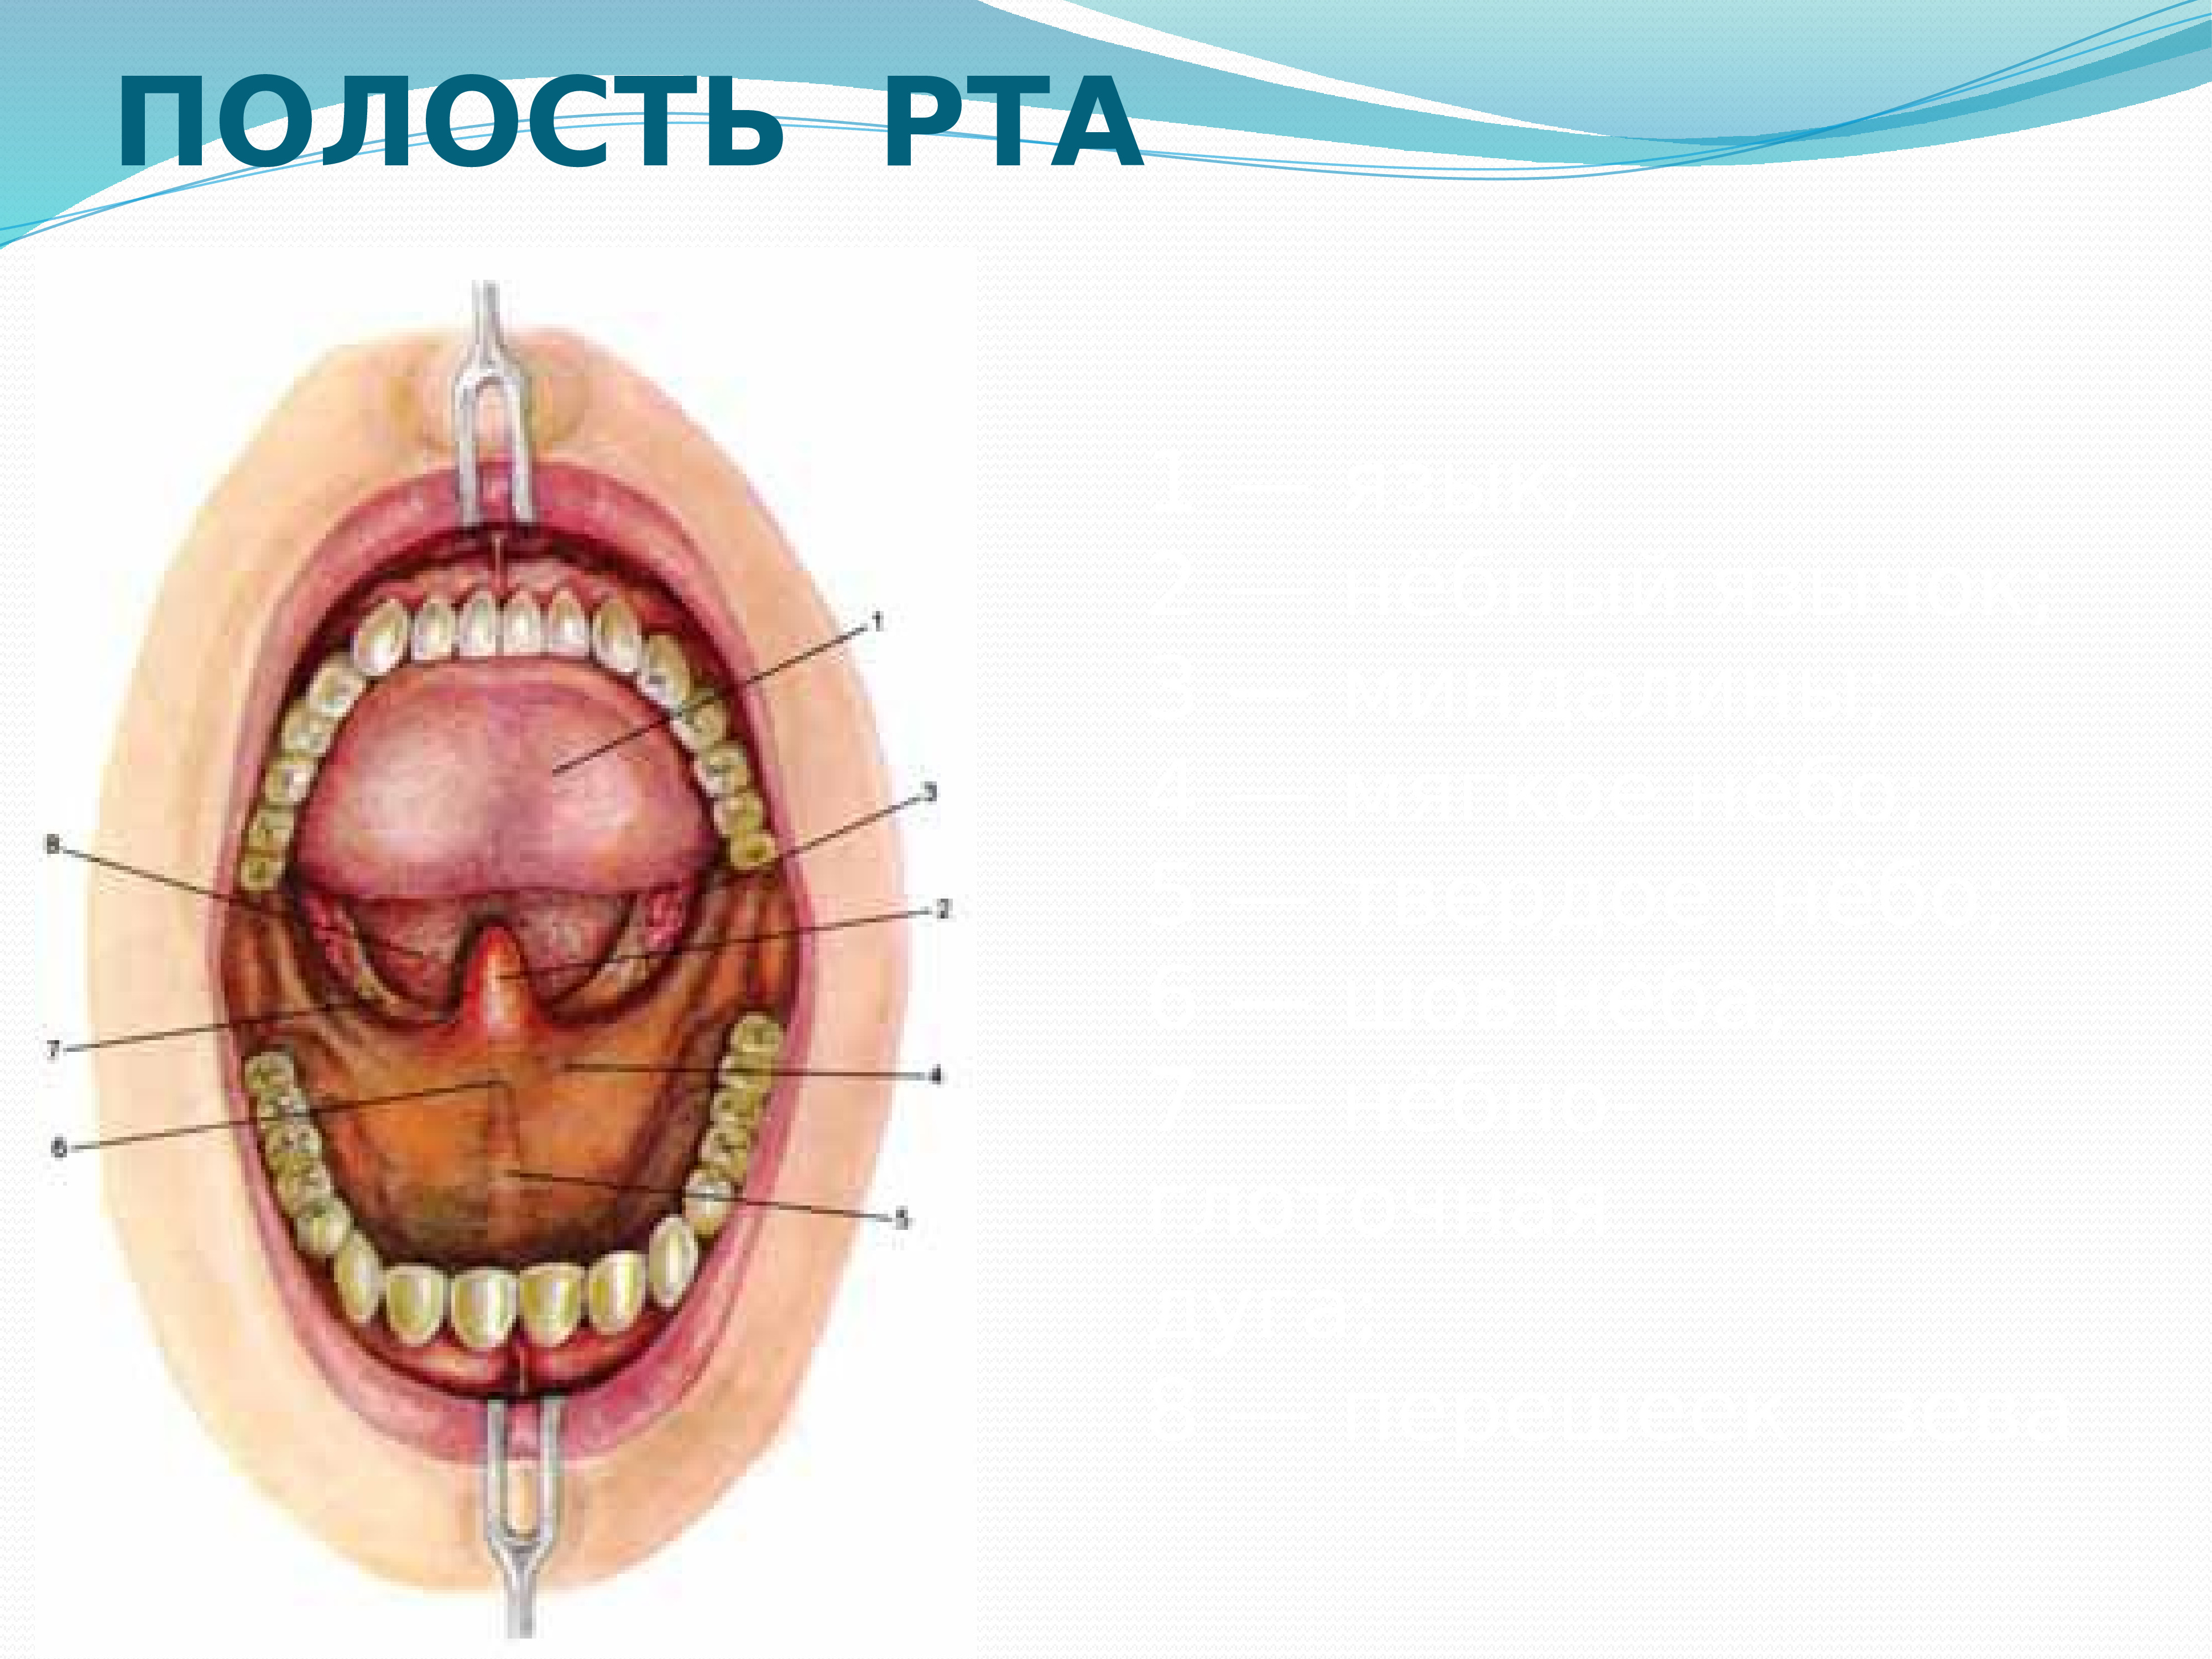 Полость рта представлена. Анатомическое строение ротовой полости. Полость рта вид спереди. Строение внутри полости рта.